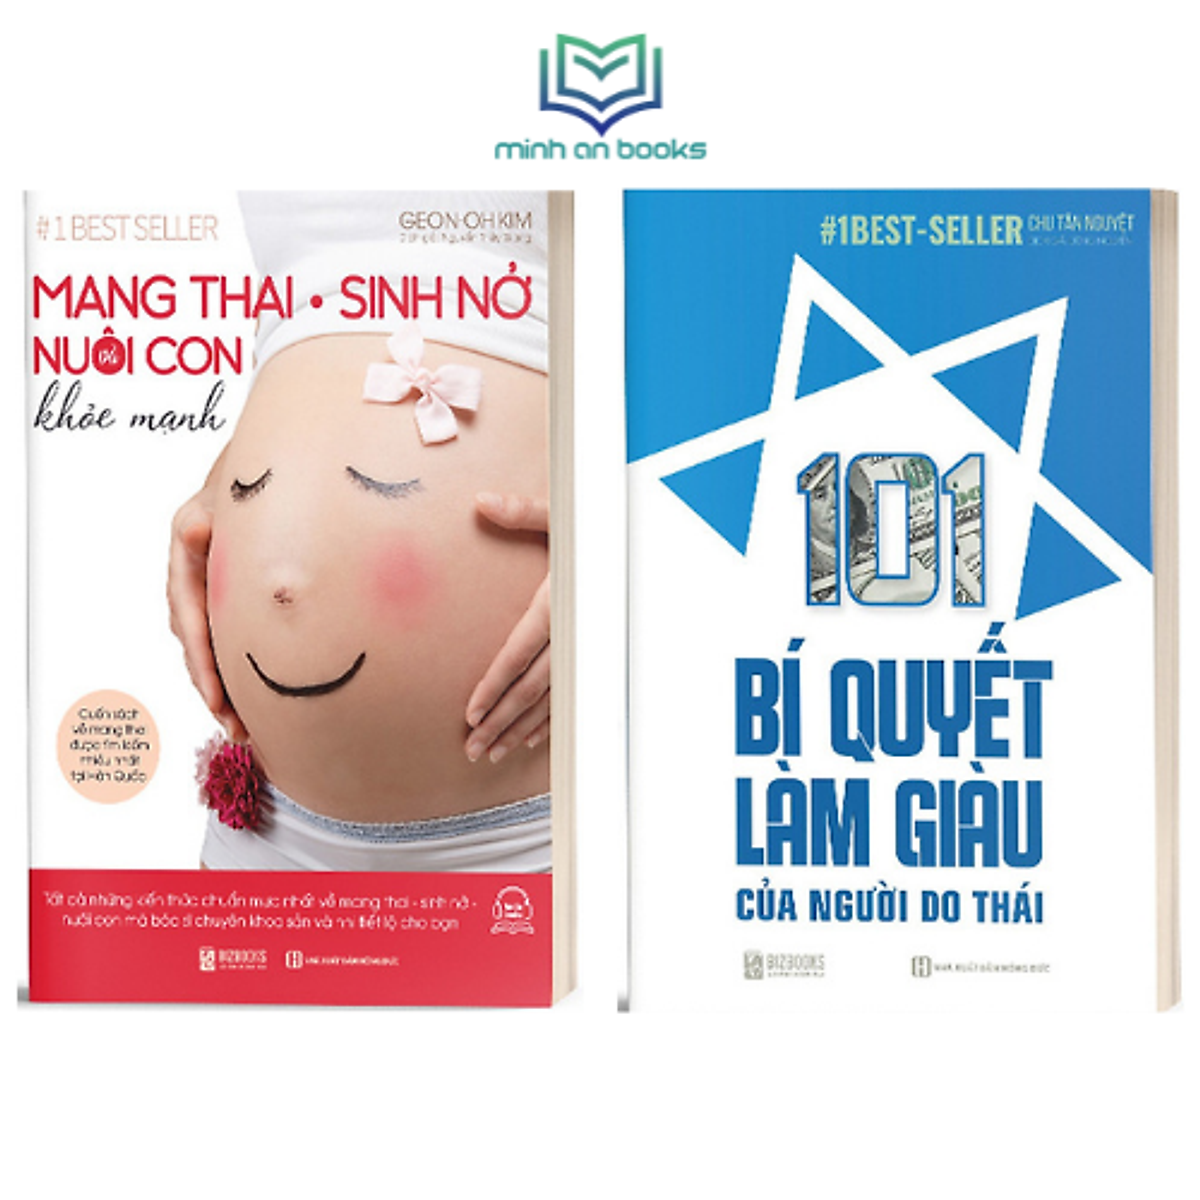 BIZBOOKS - Bộ Sách Thai Giáo - Nuôi Và Dạy Con: Mang Thai – Sinh Nở - Nuôi Con Khỏe Mạnh + 101 Bí Quyết Làm Giàu Của Người Do Thái - MinhAnBooks